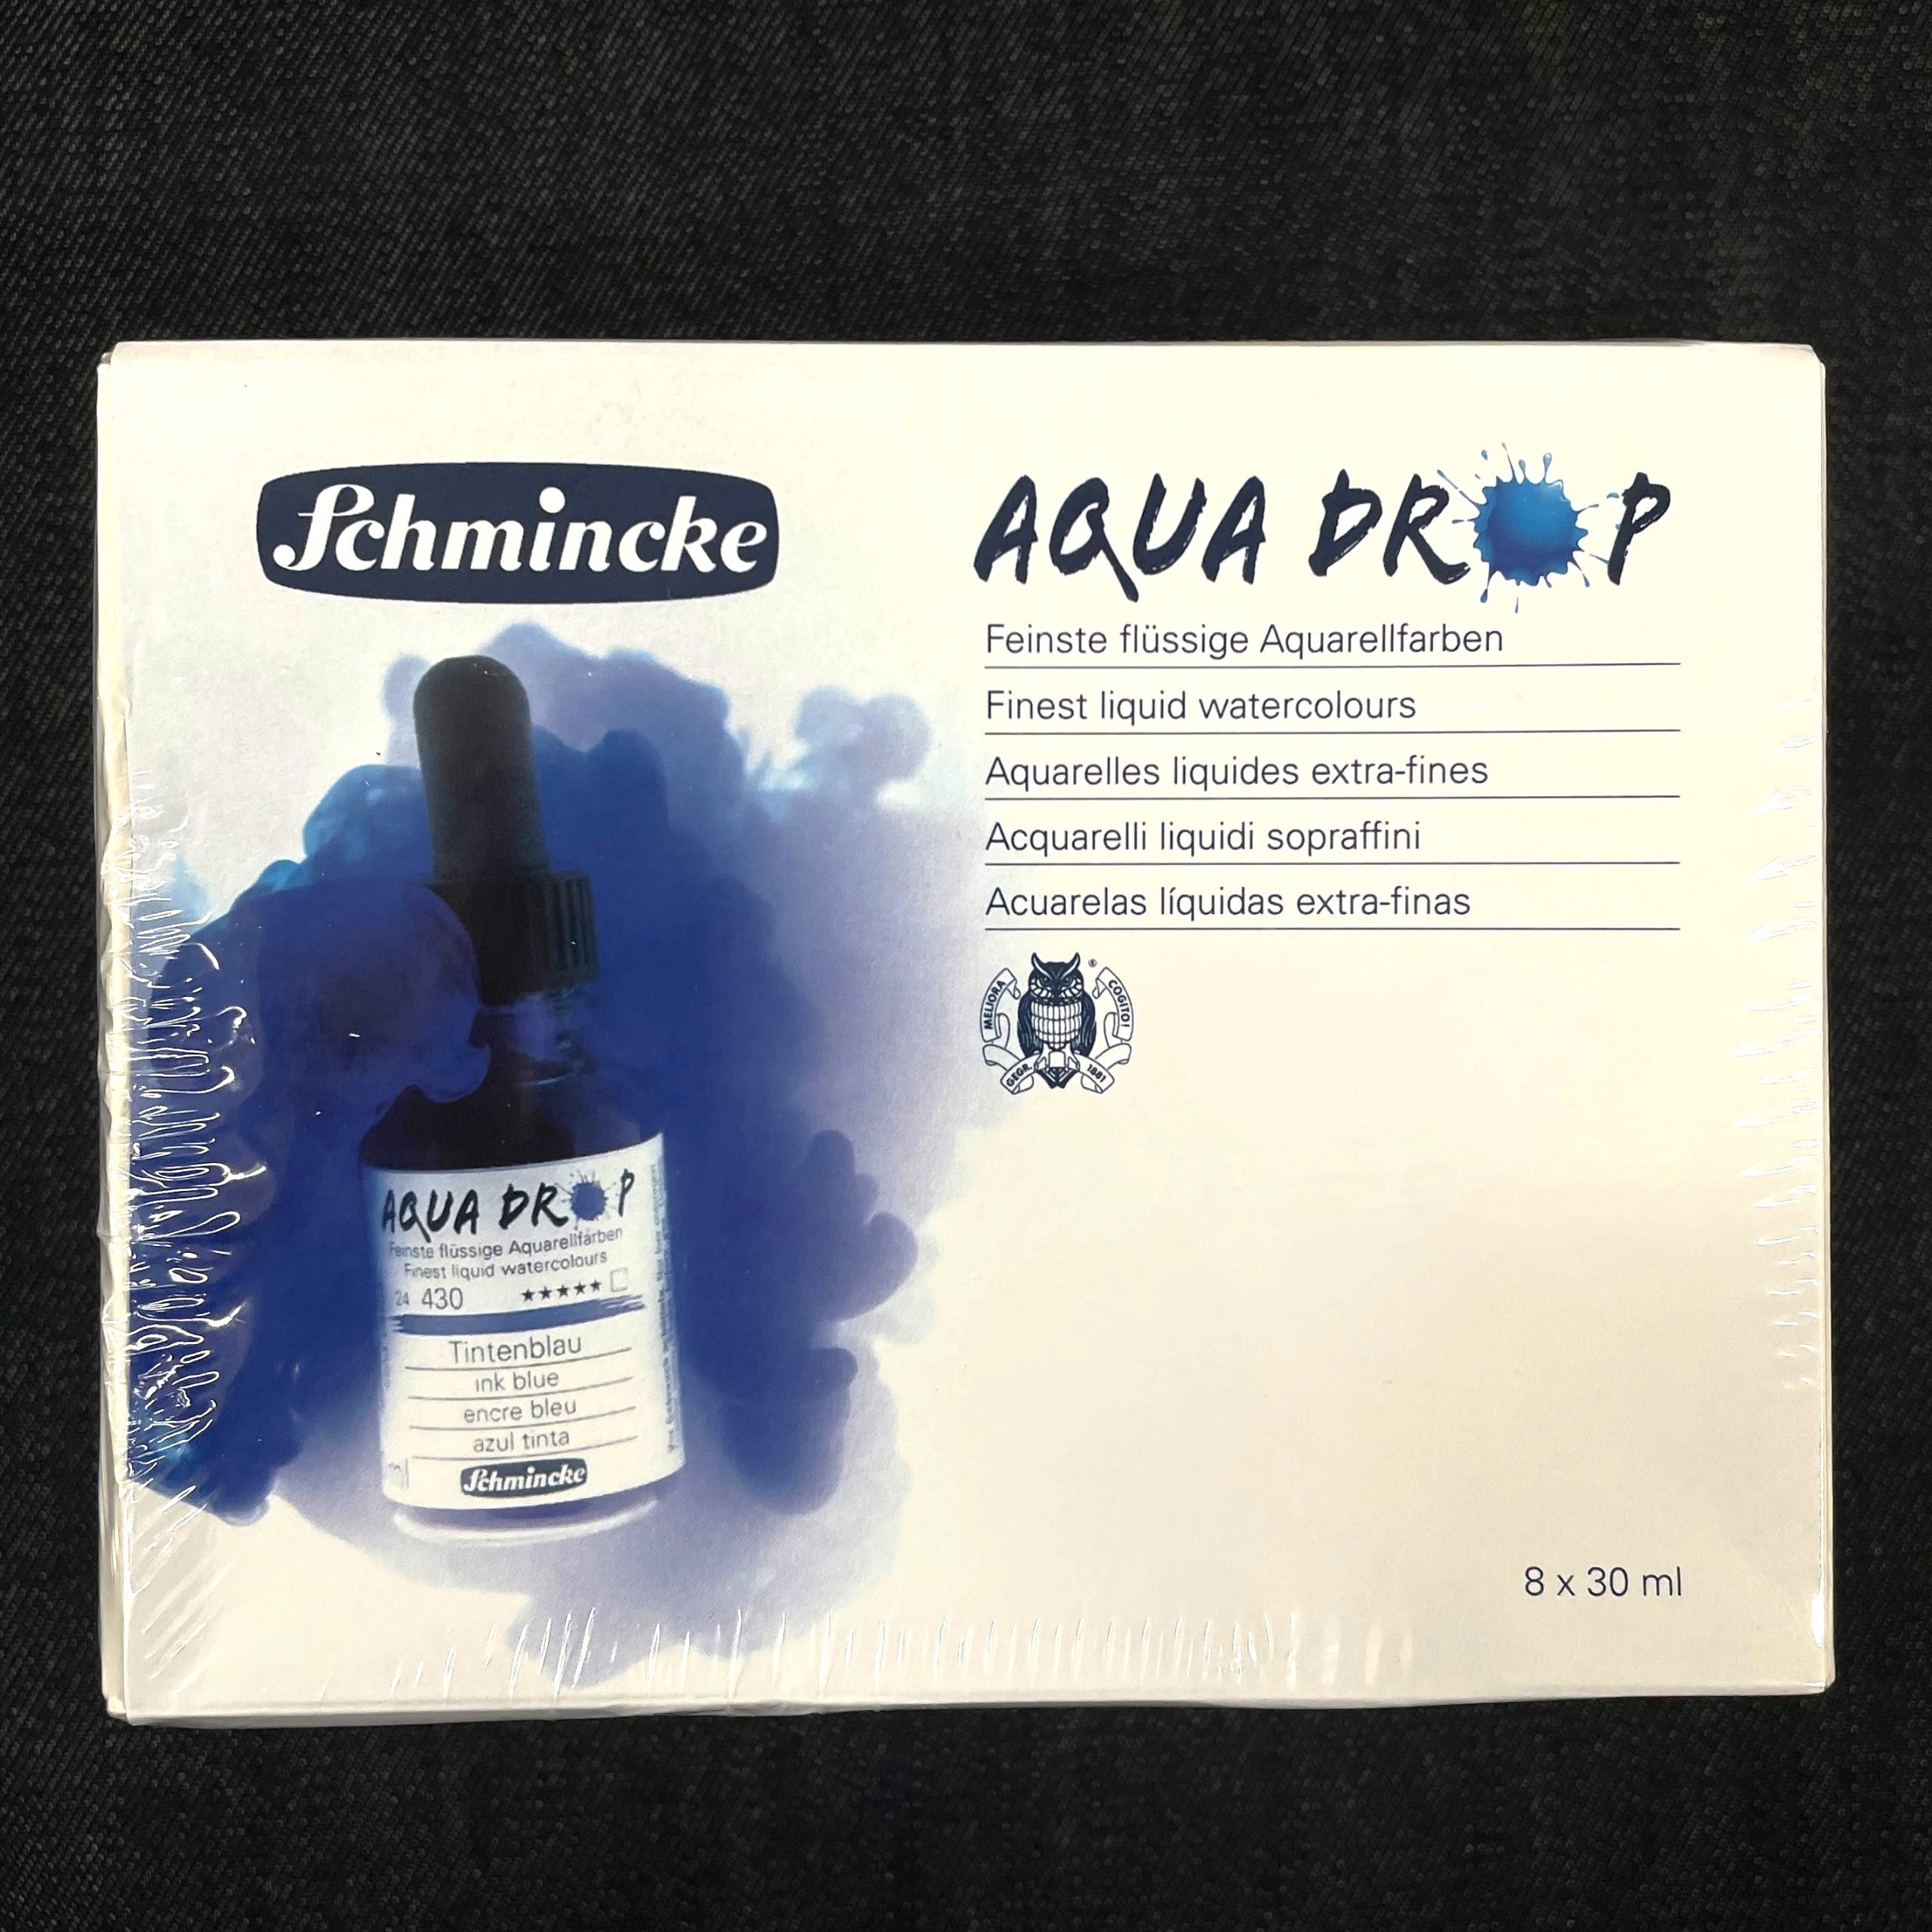 Schmincke Aqua Drop Liquid Watercolor